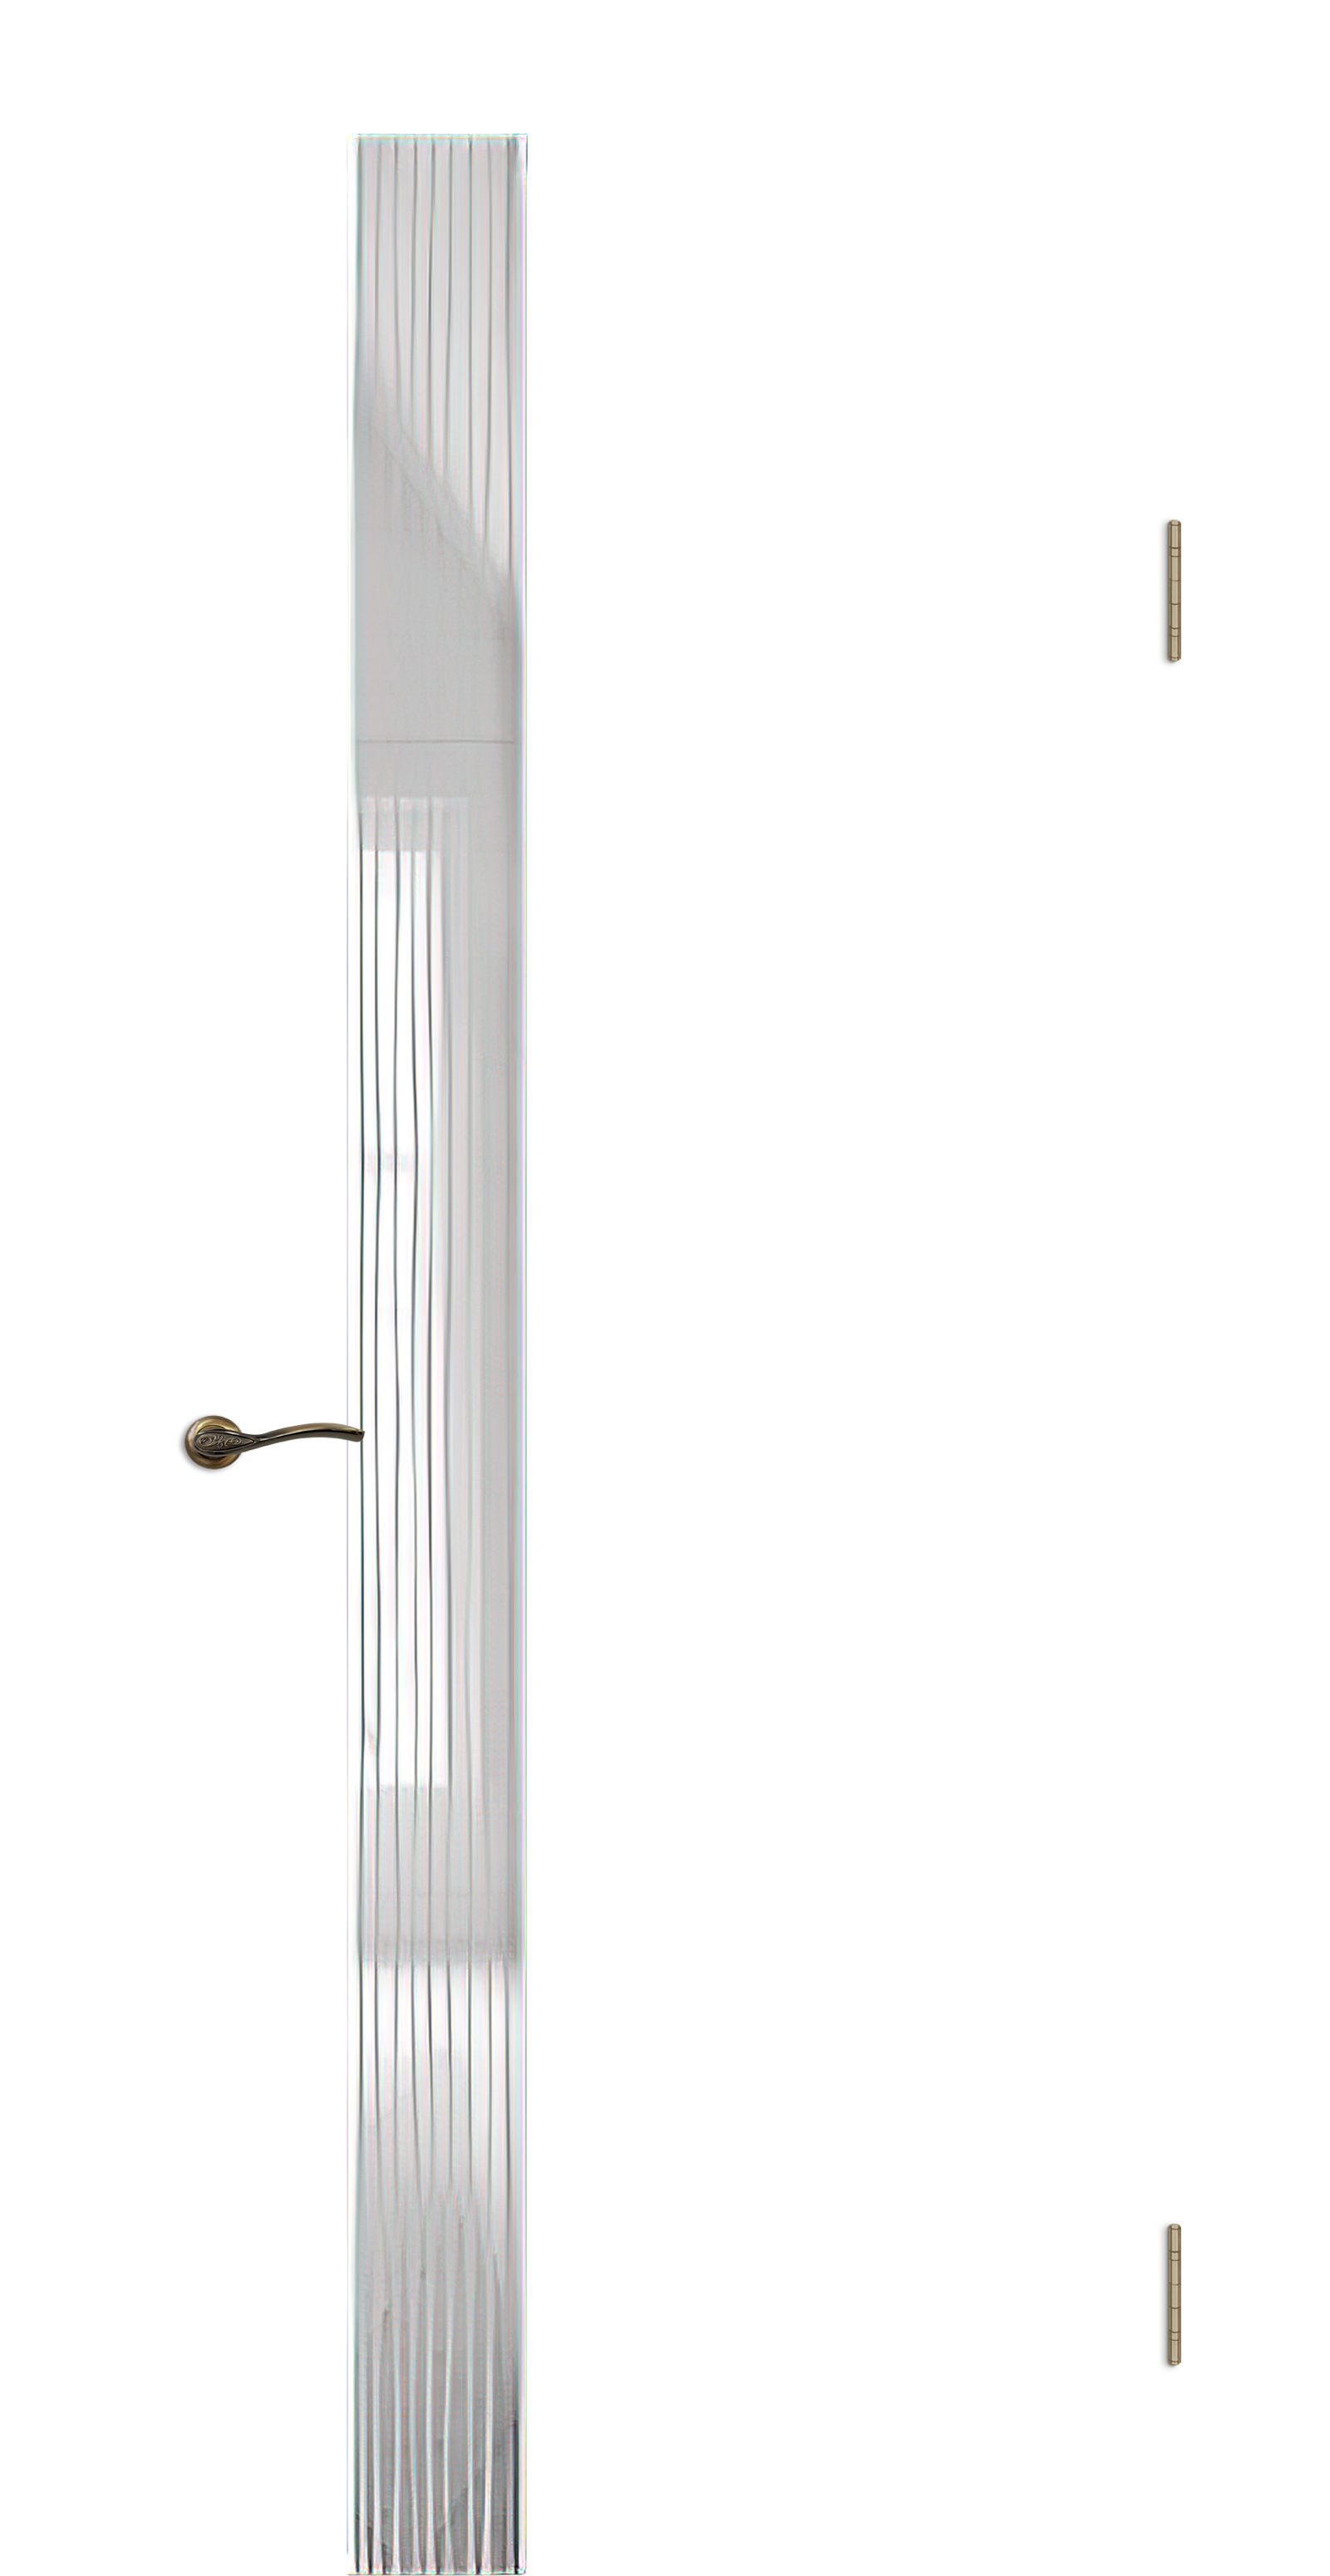 Межкомнатная дверь «Камелия К-5». Вид отделки Тон 10 Остекление: Водопад Cтандартный наличник